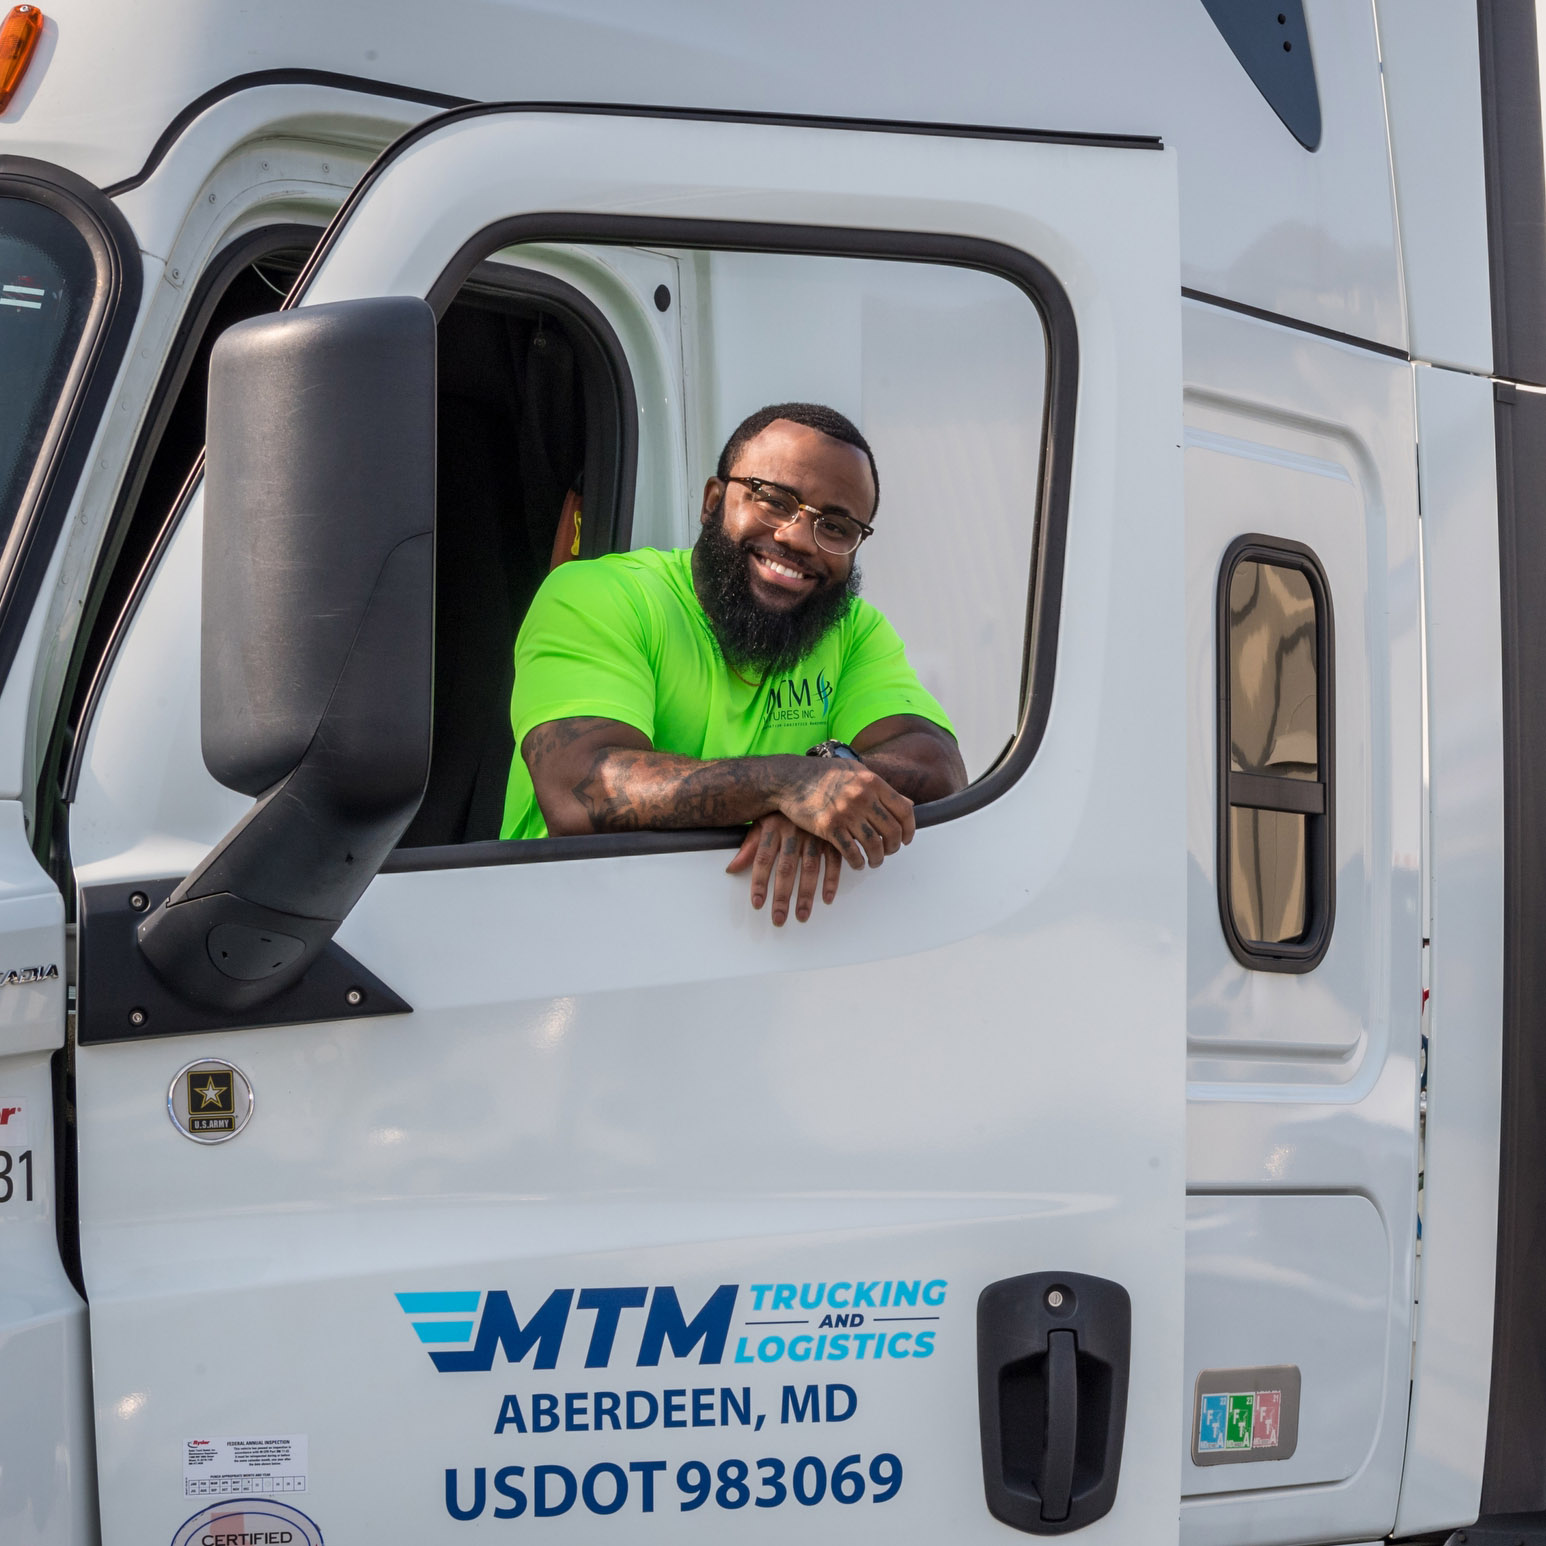 An MTM trucker looks through the window of a truck